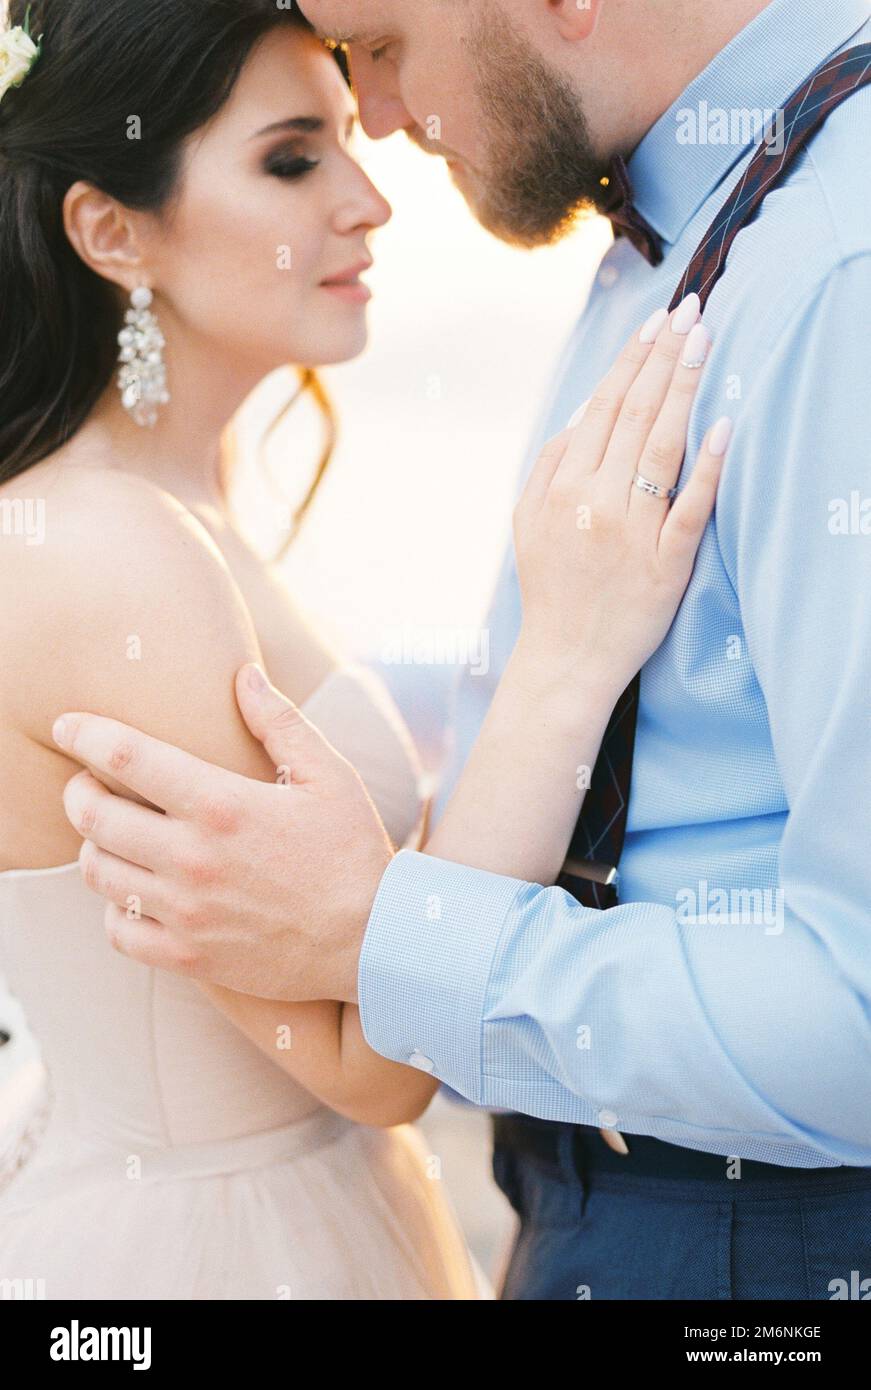 El novio casi besa a la novia. Recortado Foto de stock